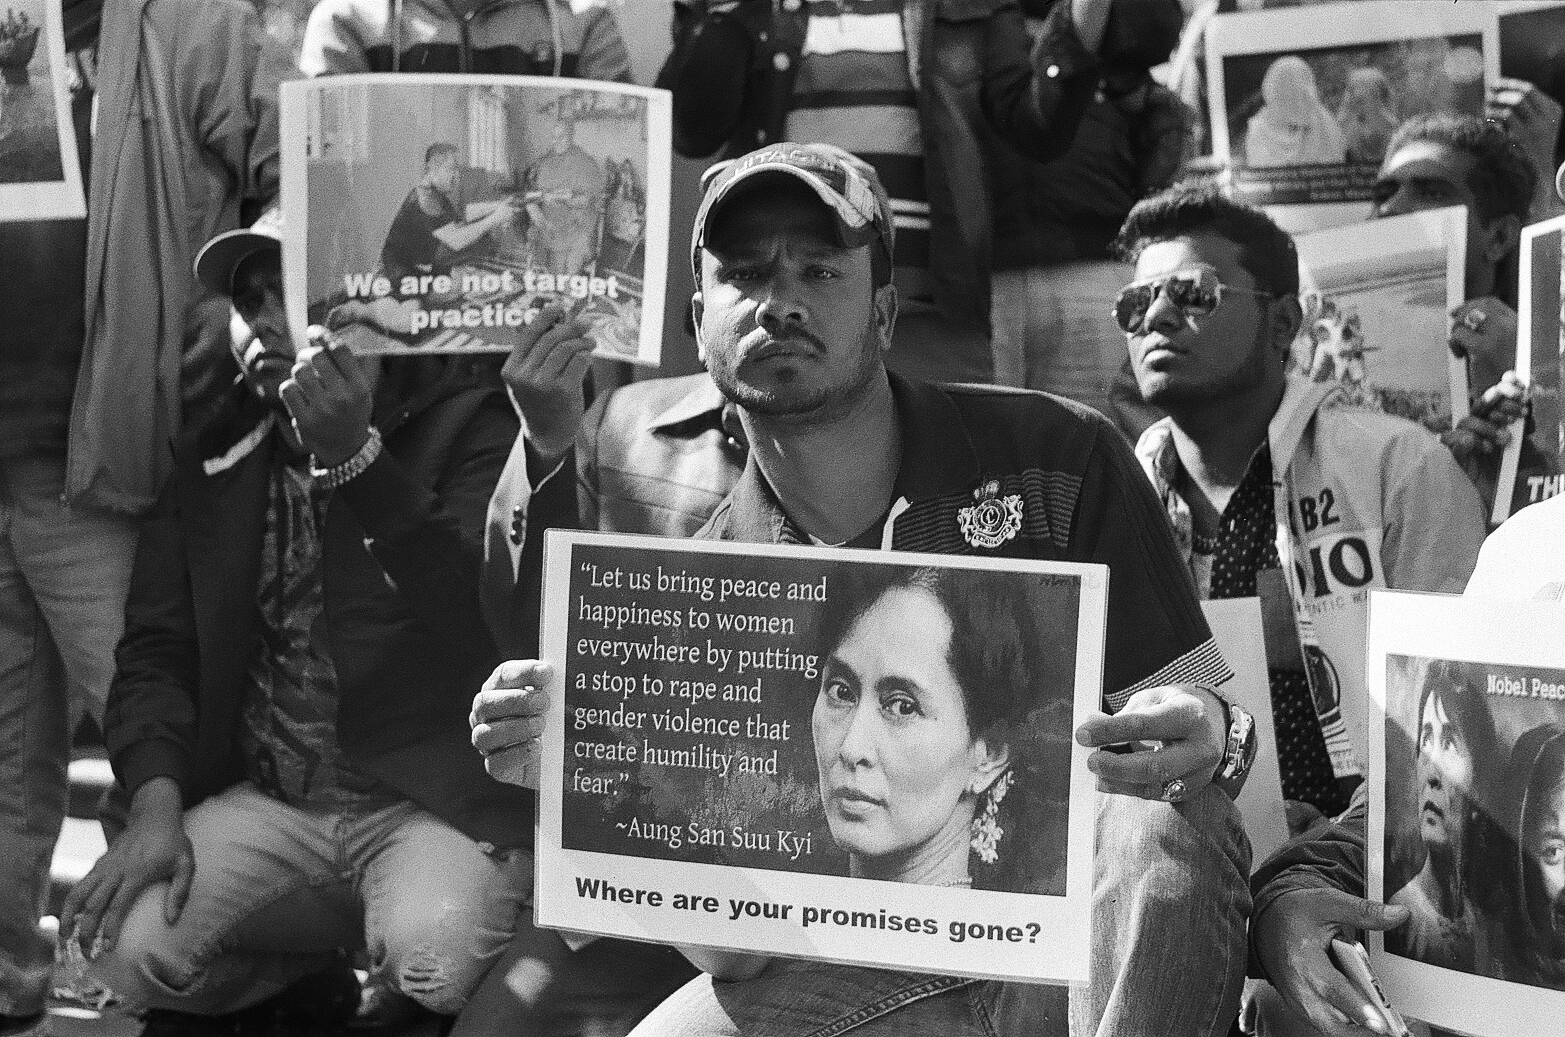  Protesters' signs at the Rohingya vigil. Photo: Ali MC